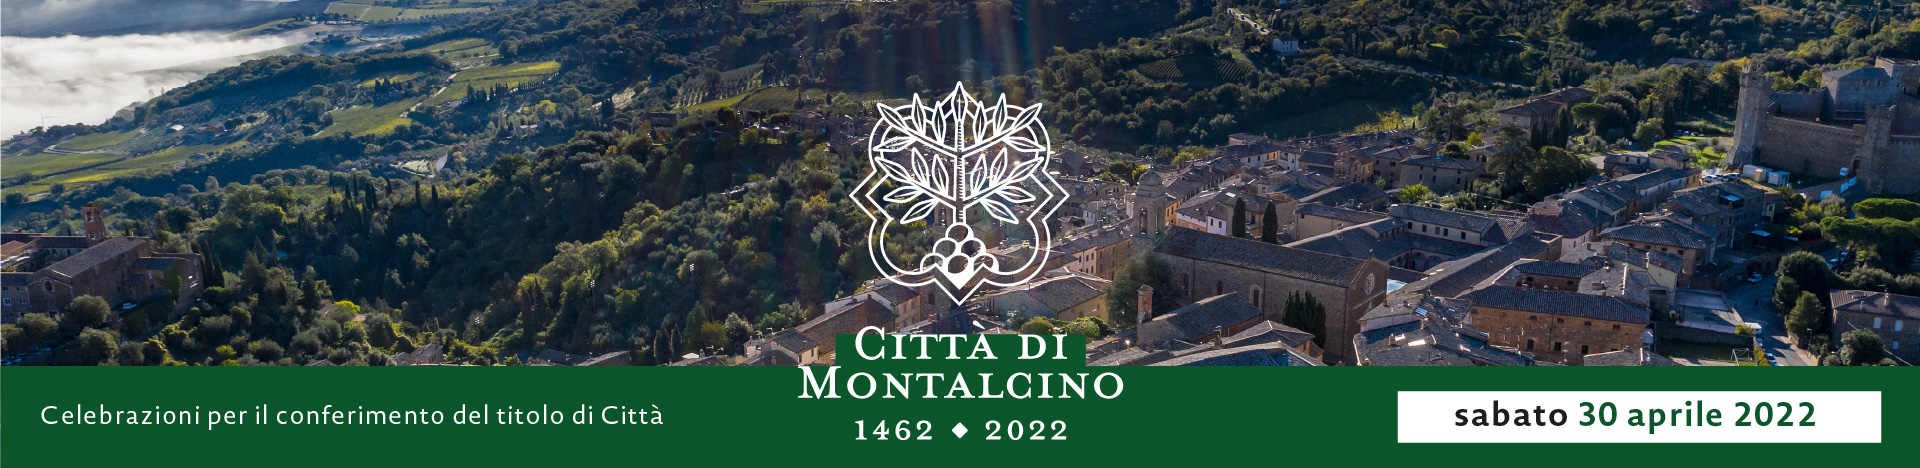 banner Città di Montalcino